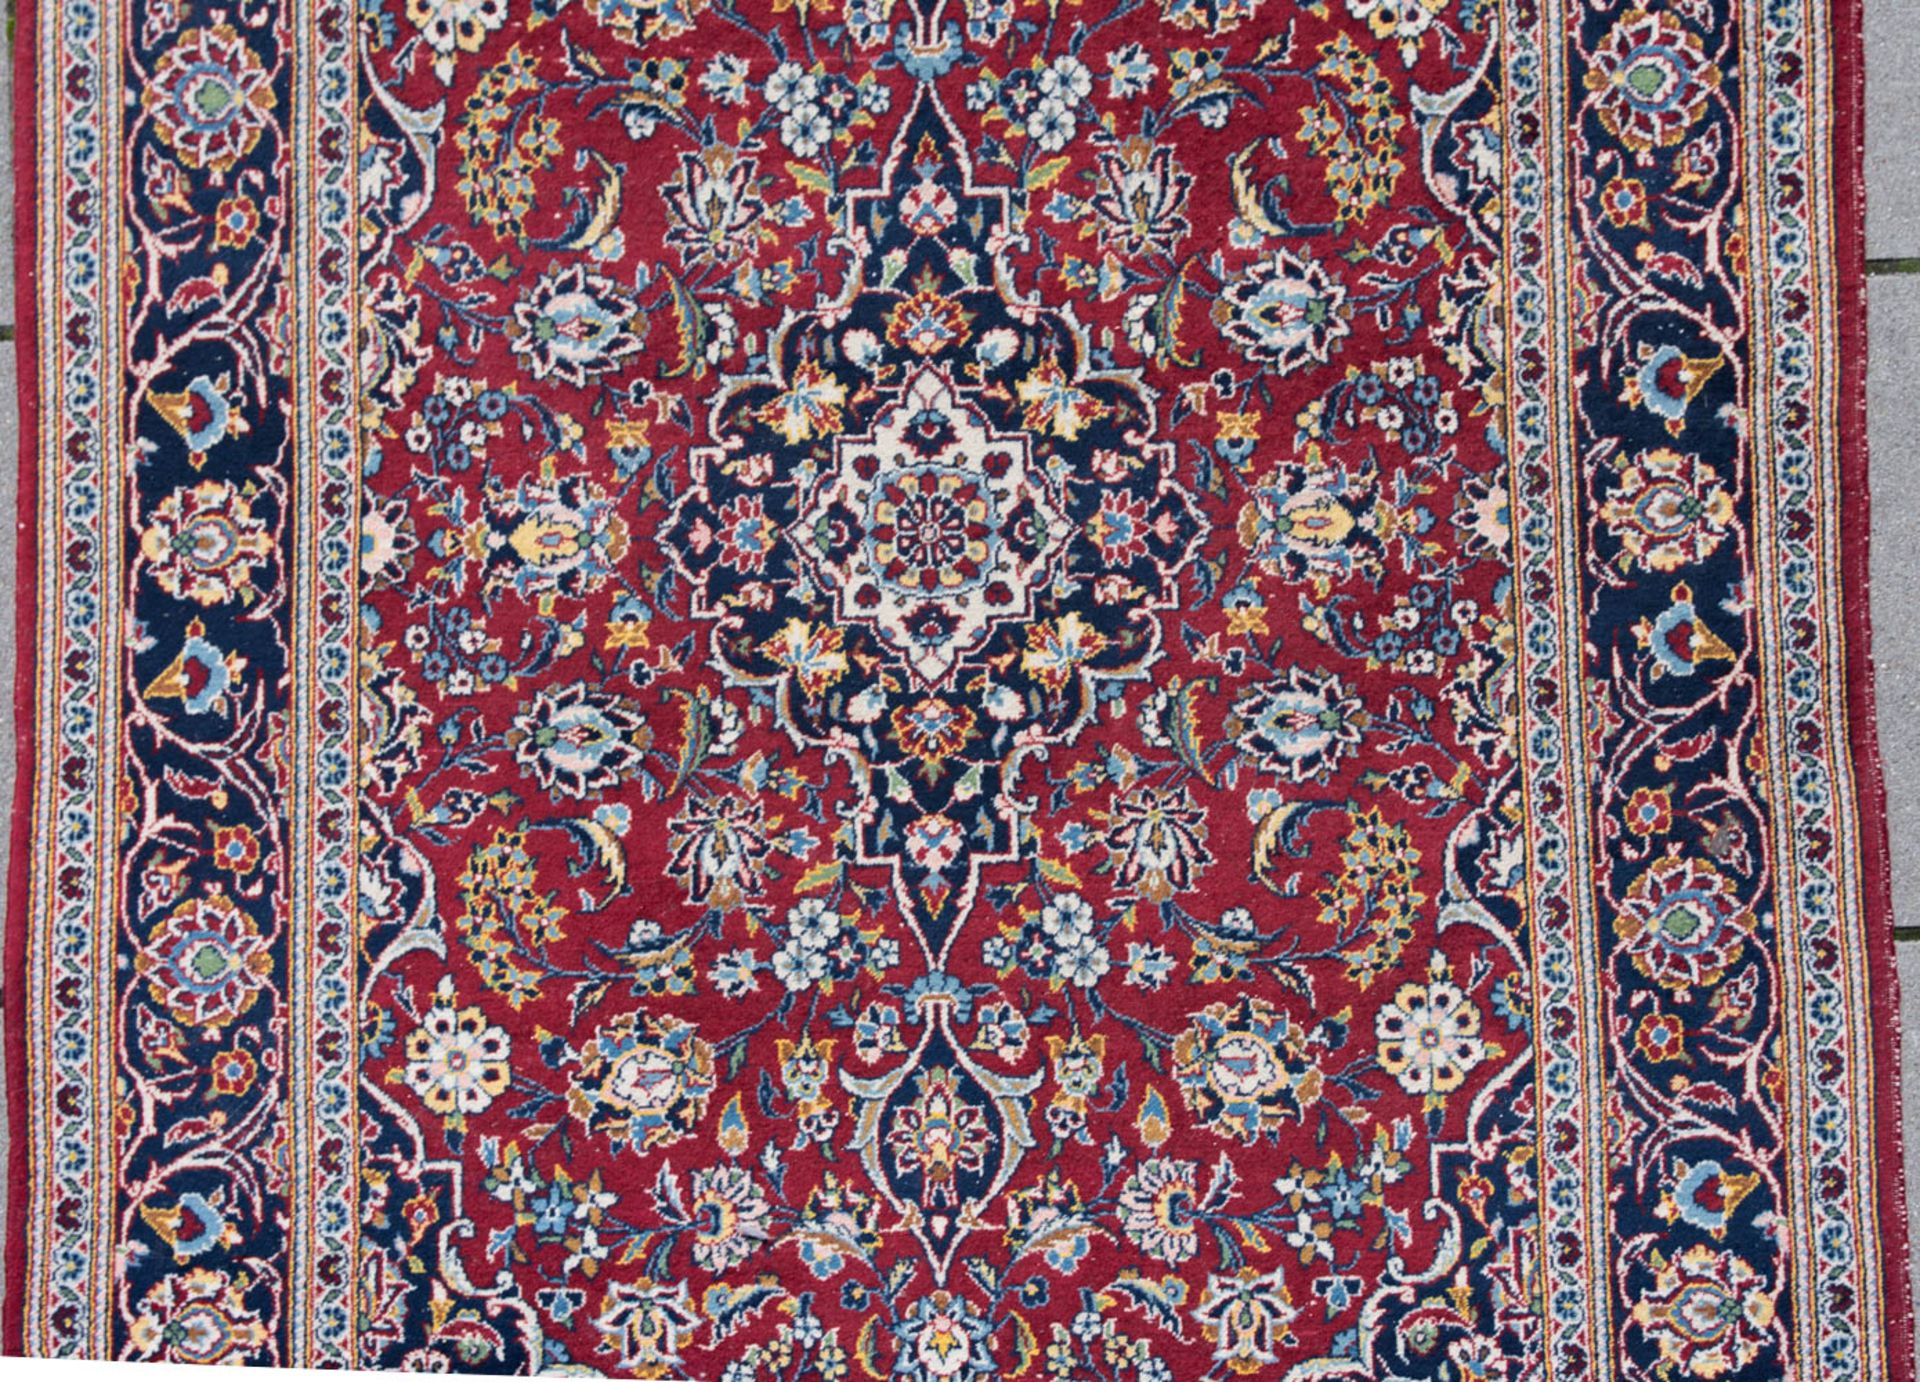 Floraler Teppich in rot und blau. - Bild 3 aus 6